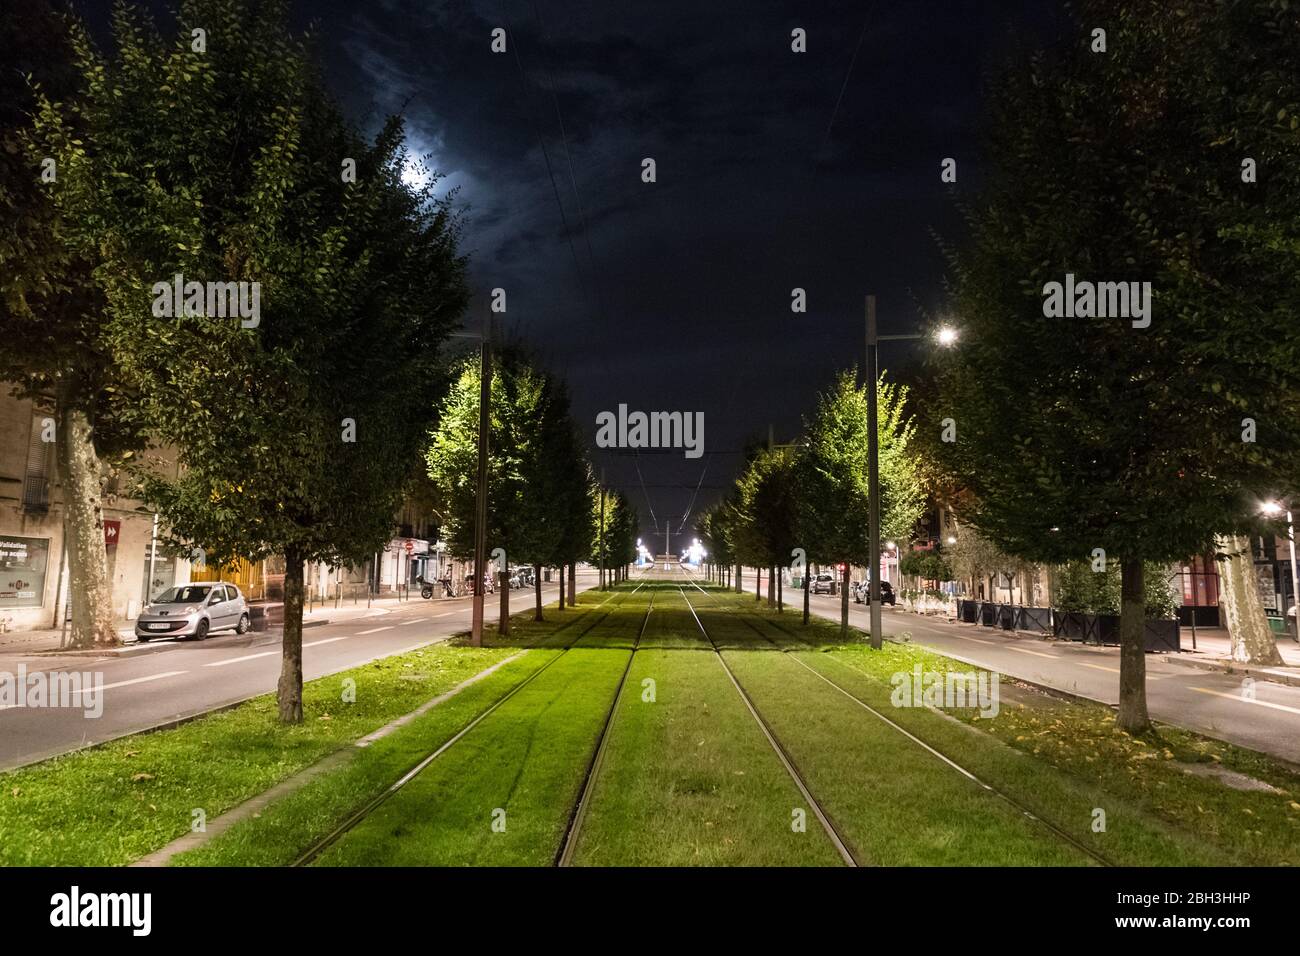 Bordeaux, France - 23 septembre 2018 : les chemins de tramway électriques des transports publics traversent des rues bordées d'arbres dans la ville de Bordeaux, assez vides Banque D'Images